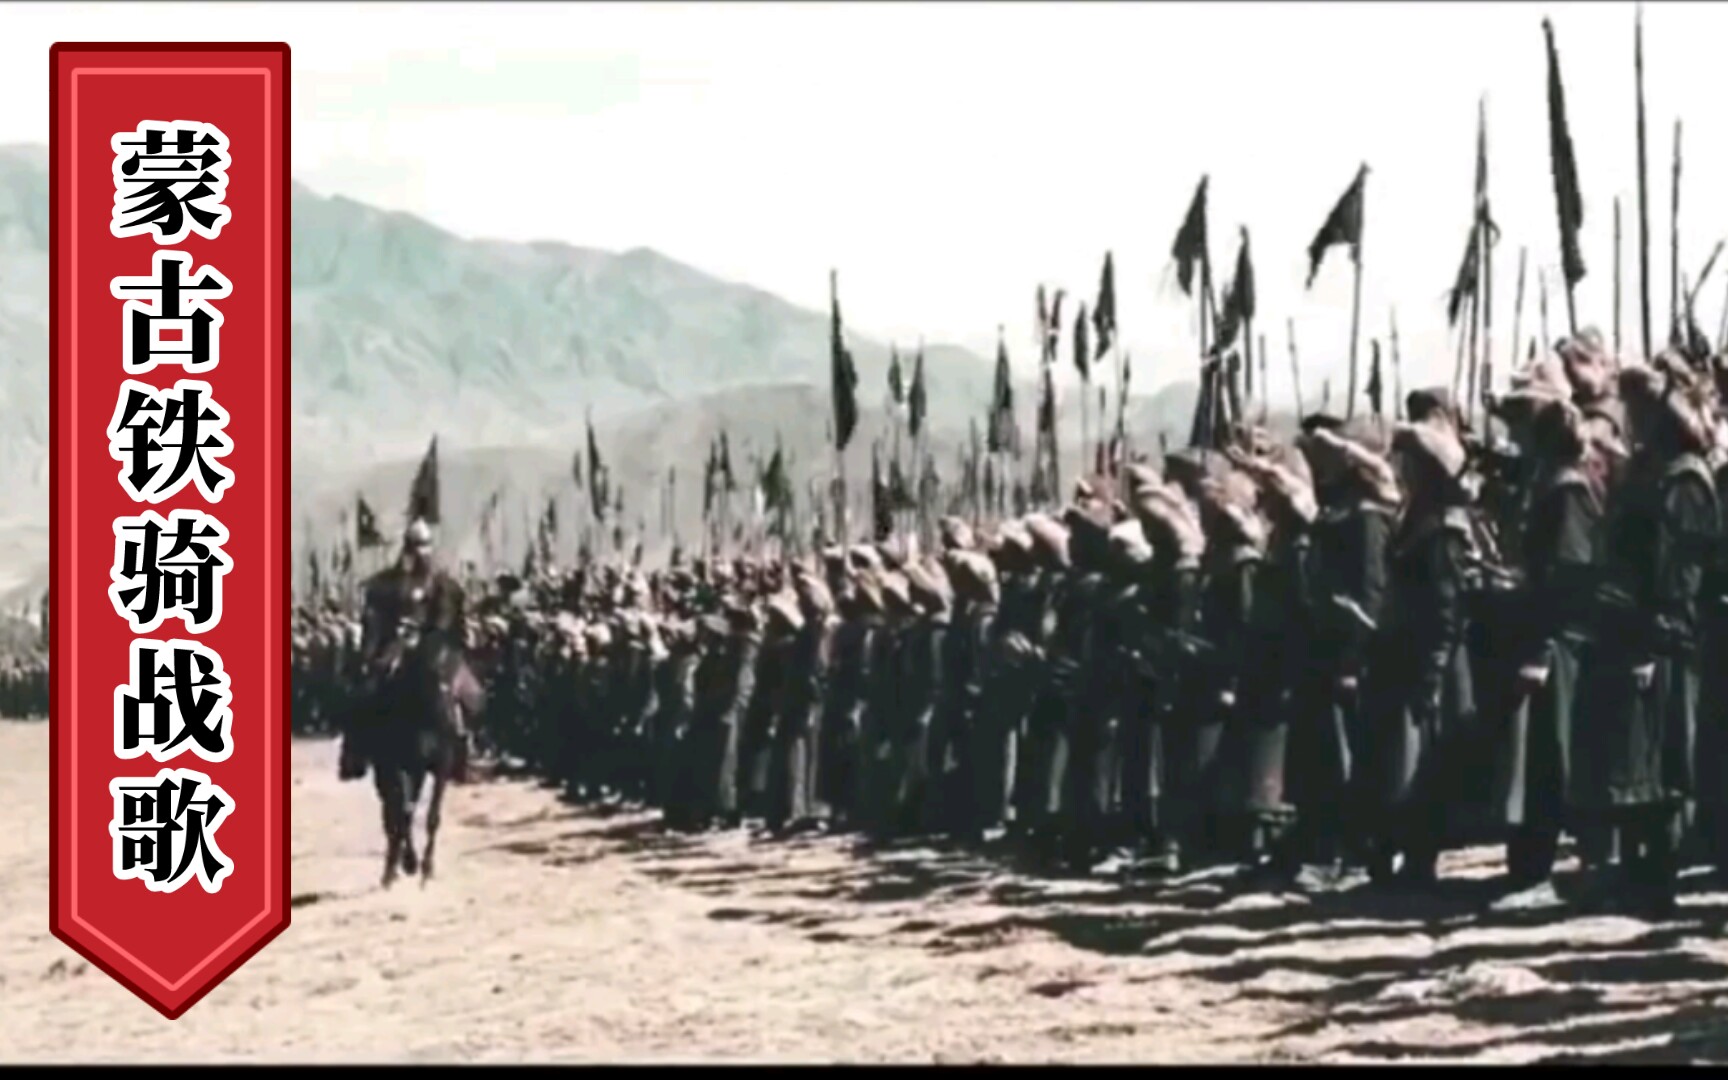 蒙古铁骑的战歌，The HU《Wolf Totem》，堪称经典，铁骑铮铮，霸气不可阻挡